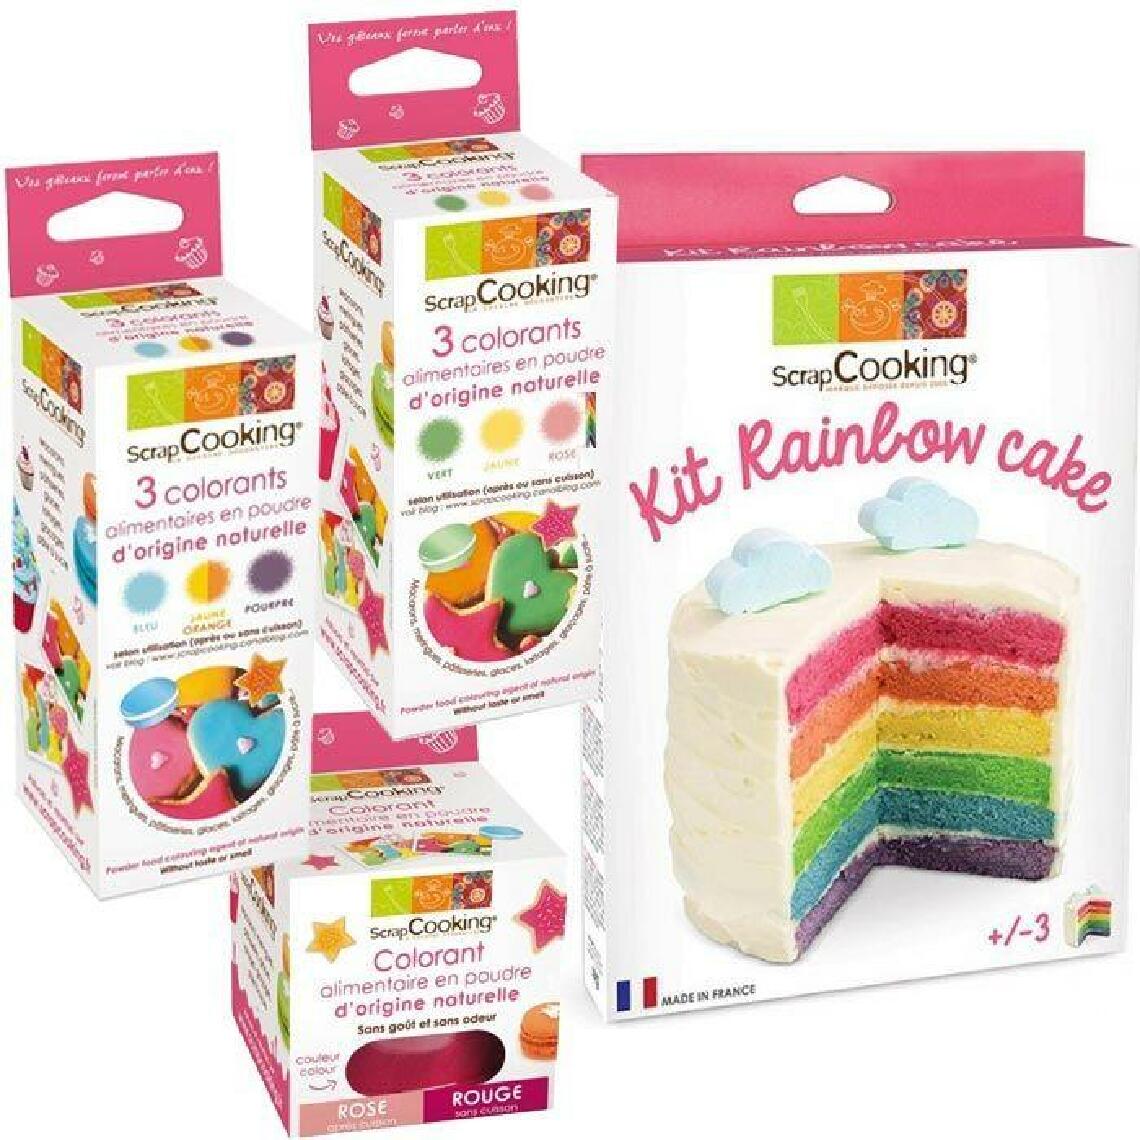 Scrapcooking - Kit rainbow cake + 7 couleurs de l'Arc-en-ciel (colorants naturels) - Kits créatifs